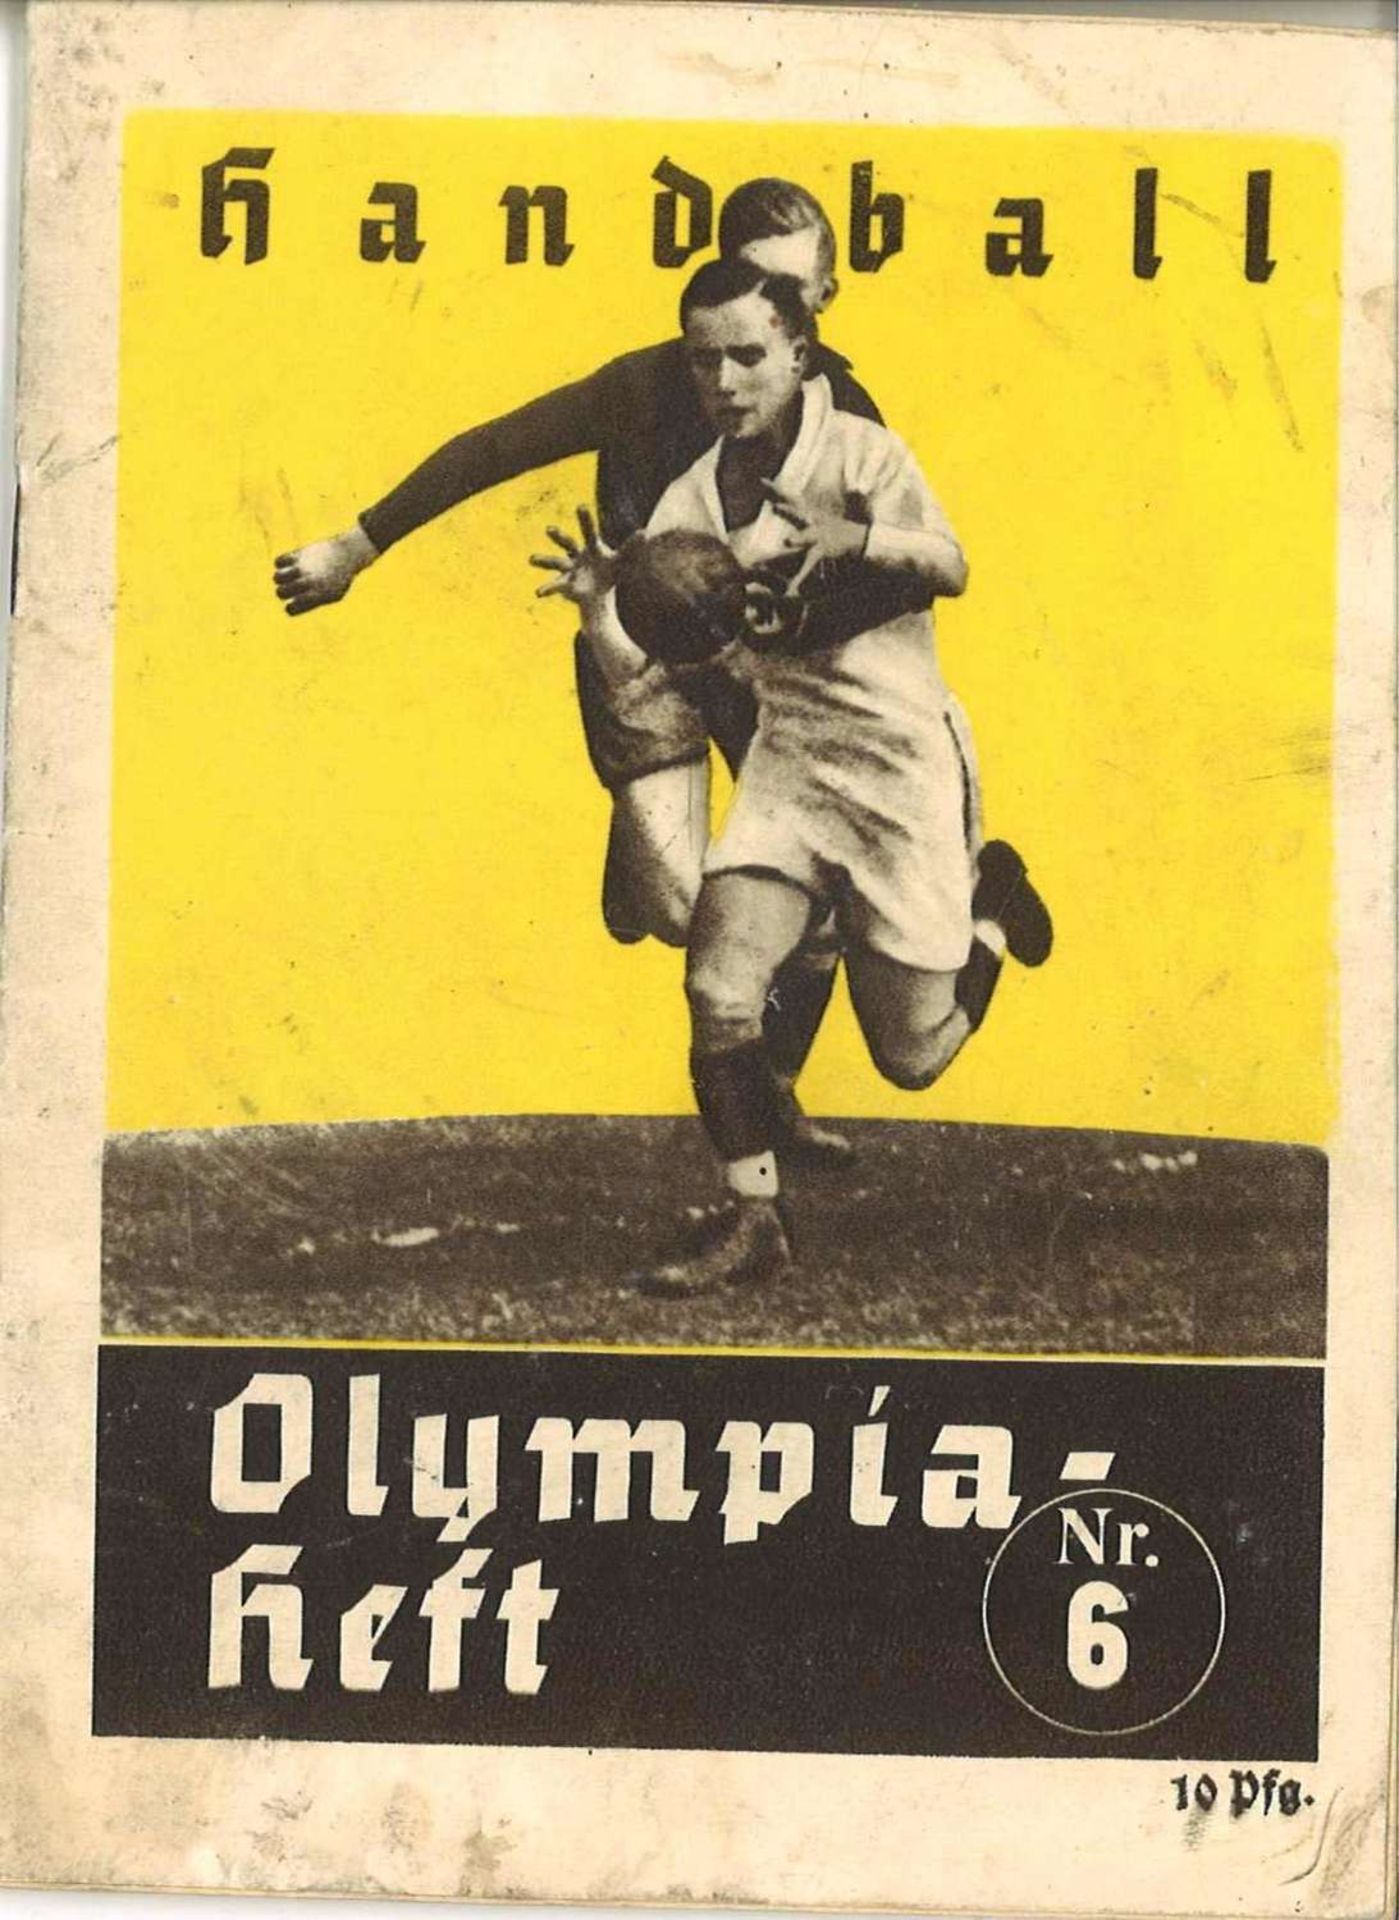 Berlin 1936, Olympia-Heft, 32 Seiten, Handball Nr. 6Berlin 1936, Olympics booklet, 32 pages,